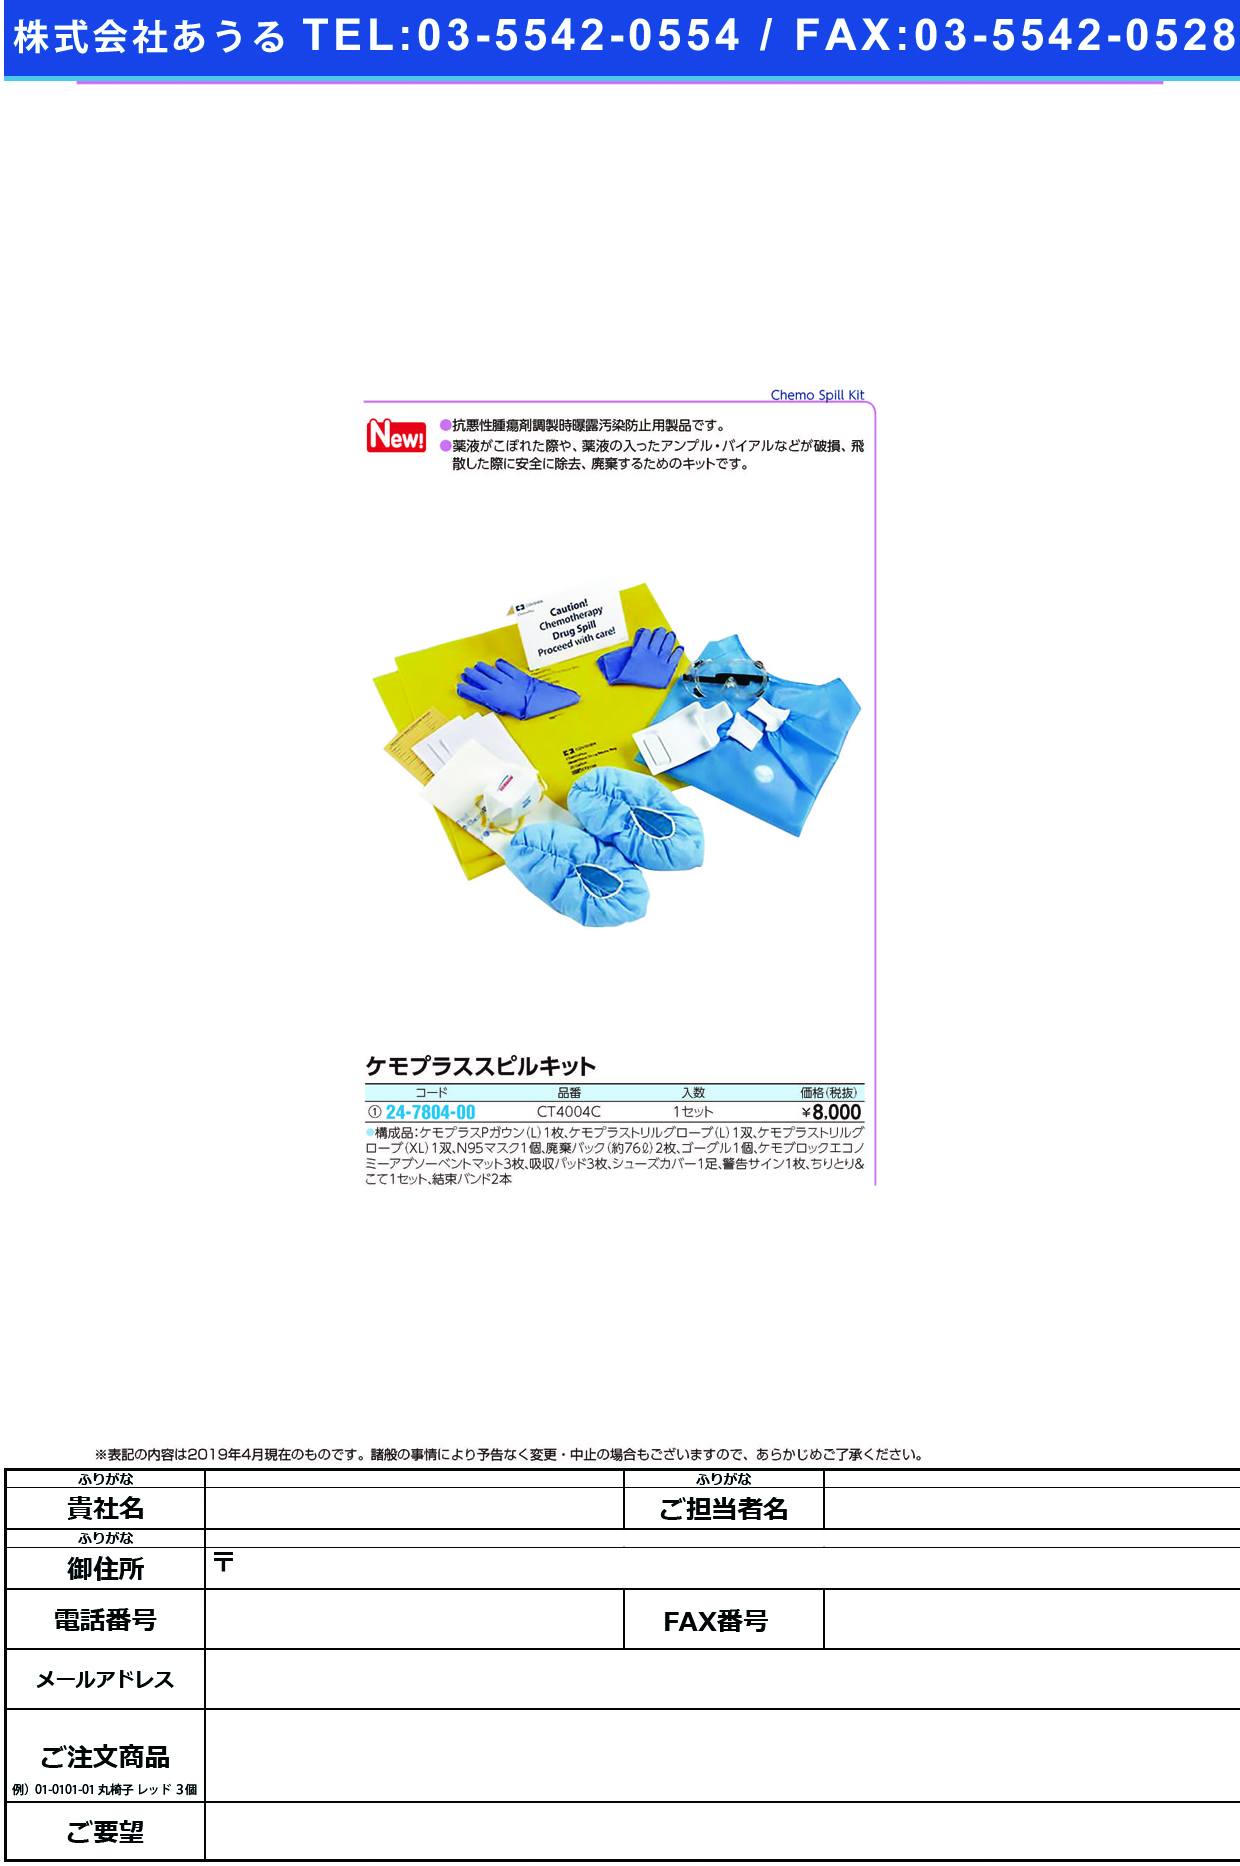 (24-7804-00)ケモプラスピルキットCT400C(1ｾｯﾄ) ｹﾓﾌﾟﾗｽﾋﾟﾙｷｯﾄ(日科ミクロン)【1箱単位】【2019年カタログ商品】